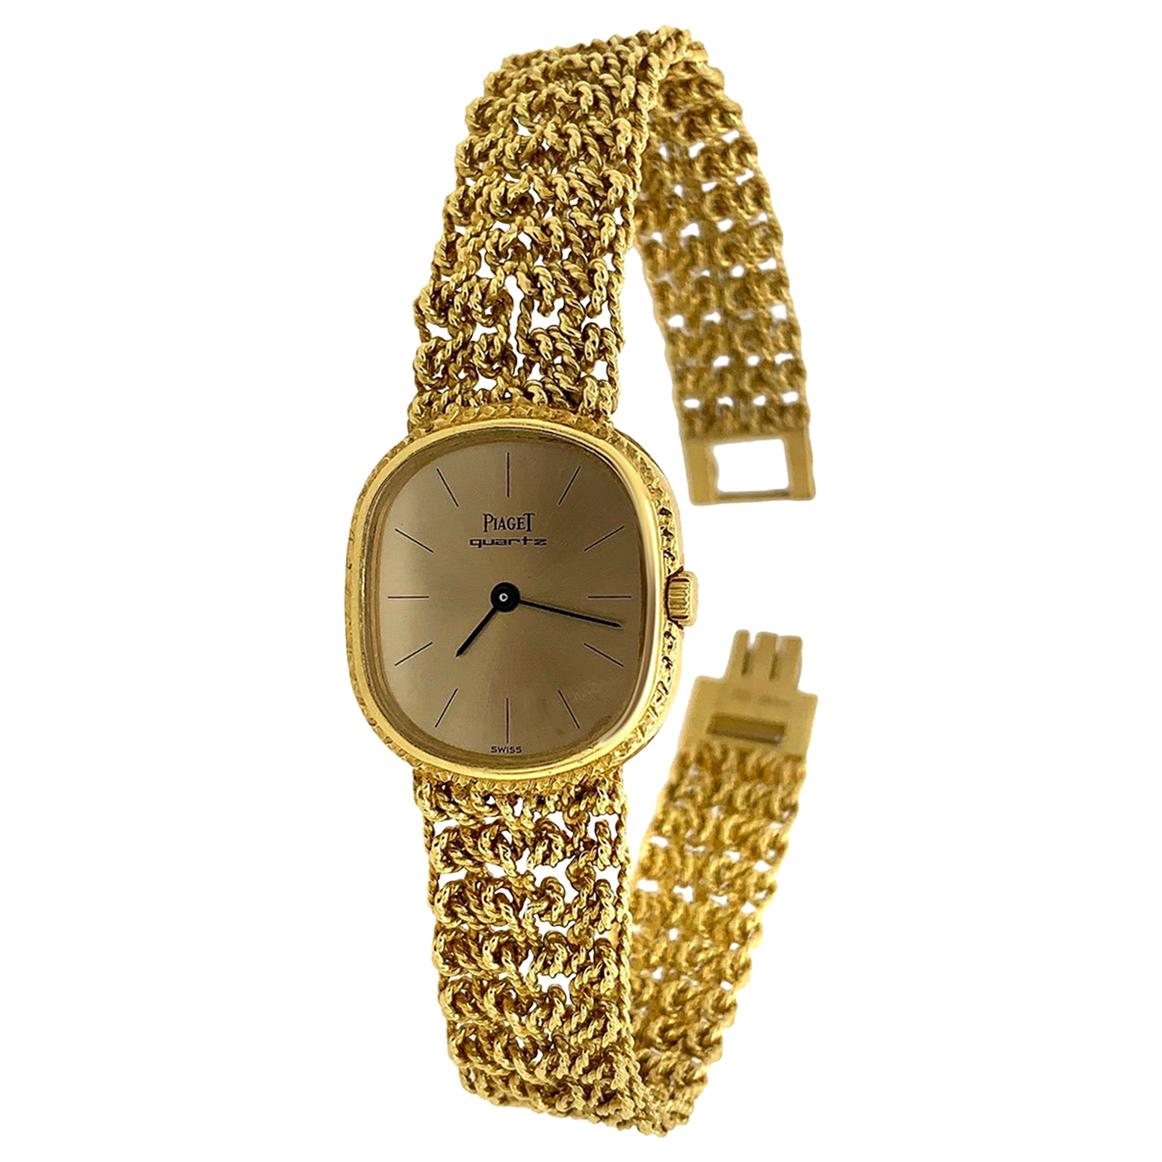 Piaget 18 Karat Yellow Gold Bracelet Watch